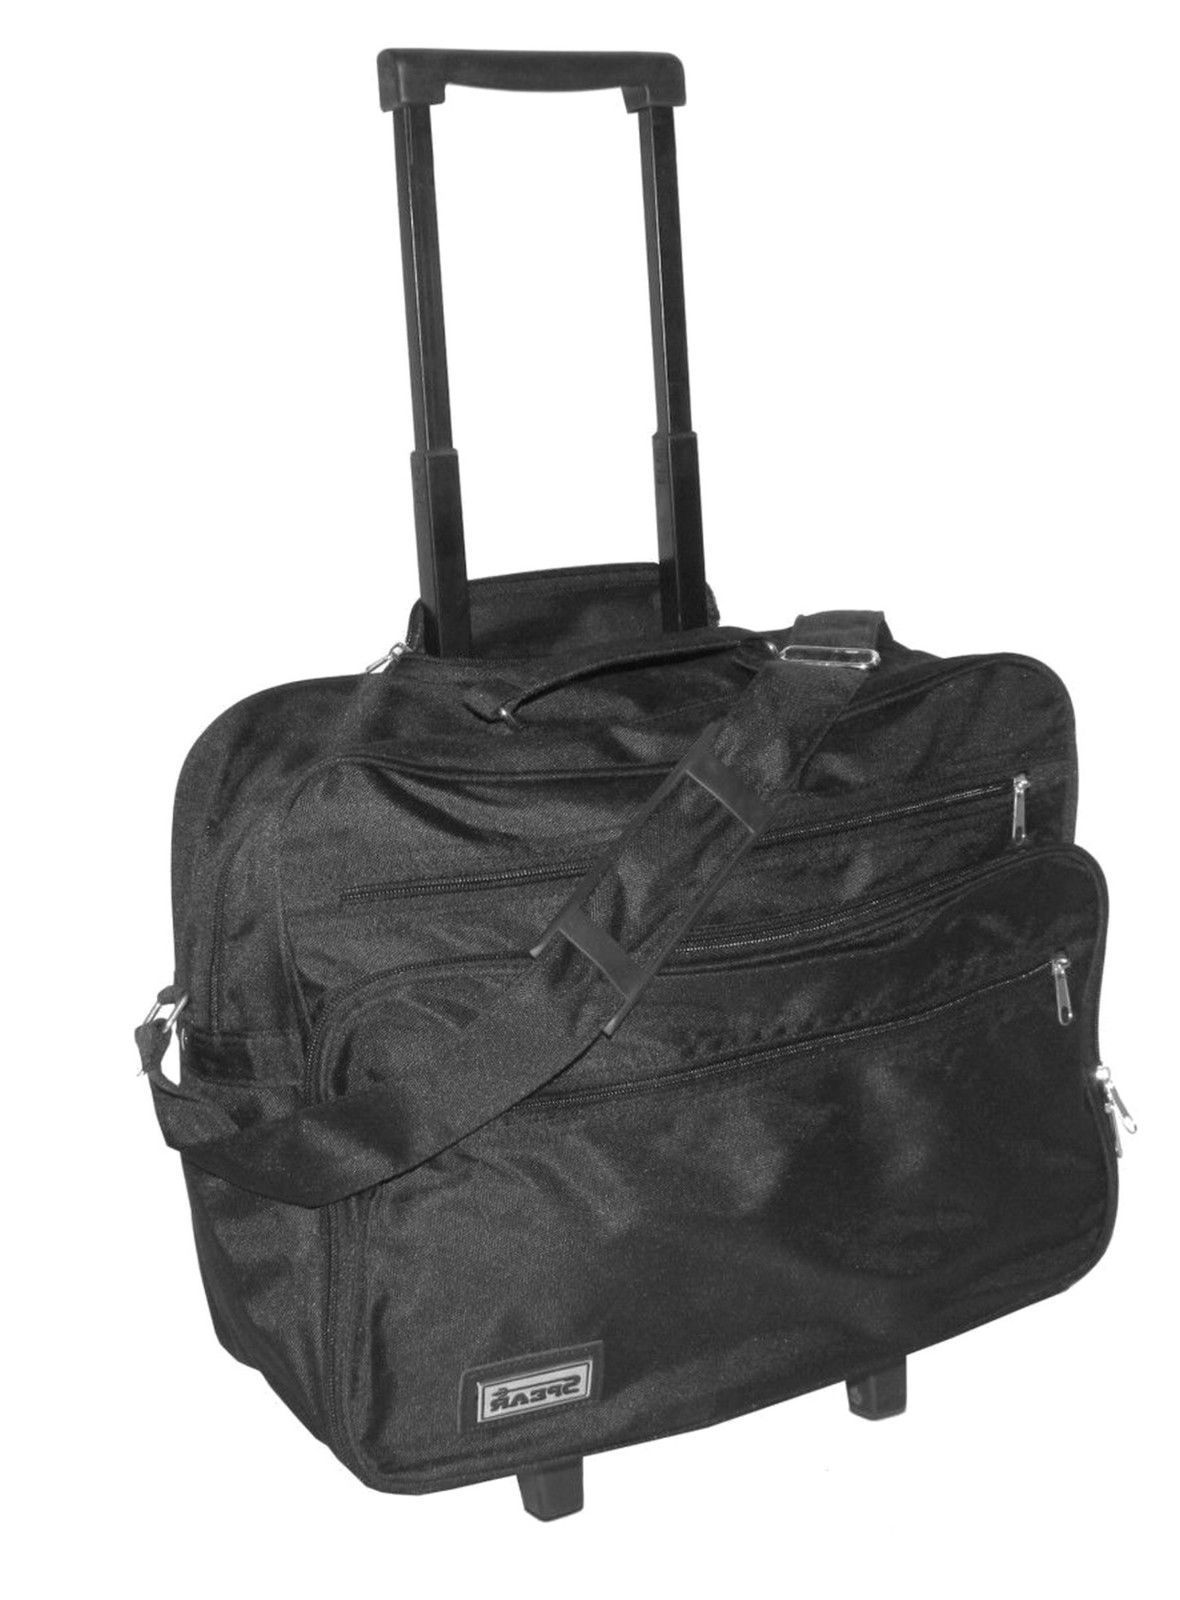 Trolley Boardgepäck Reisetasche Reisekoffer Handgepäck Koffer Tasche schwarz